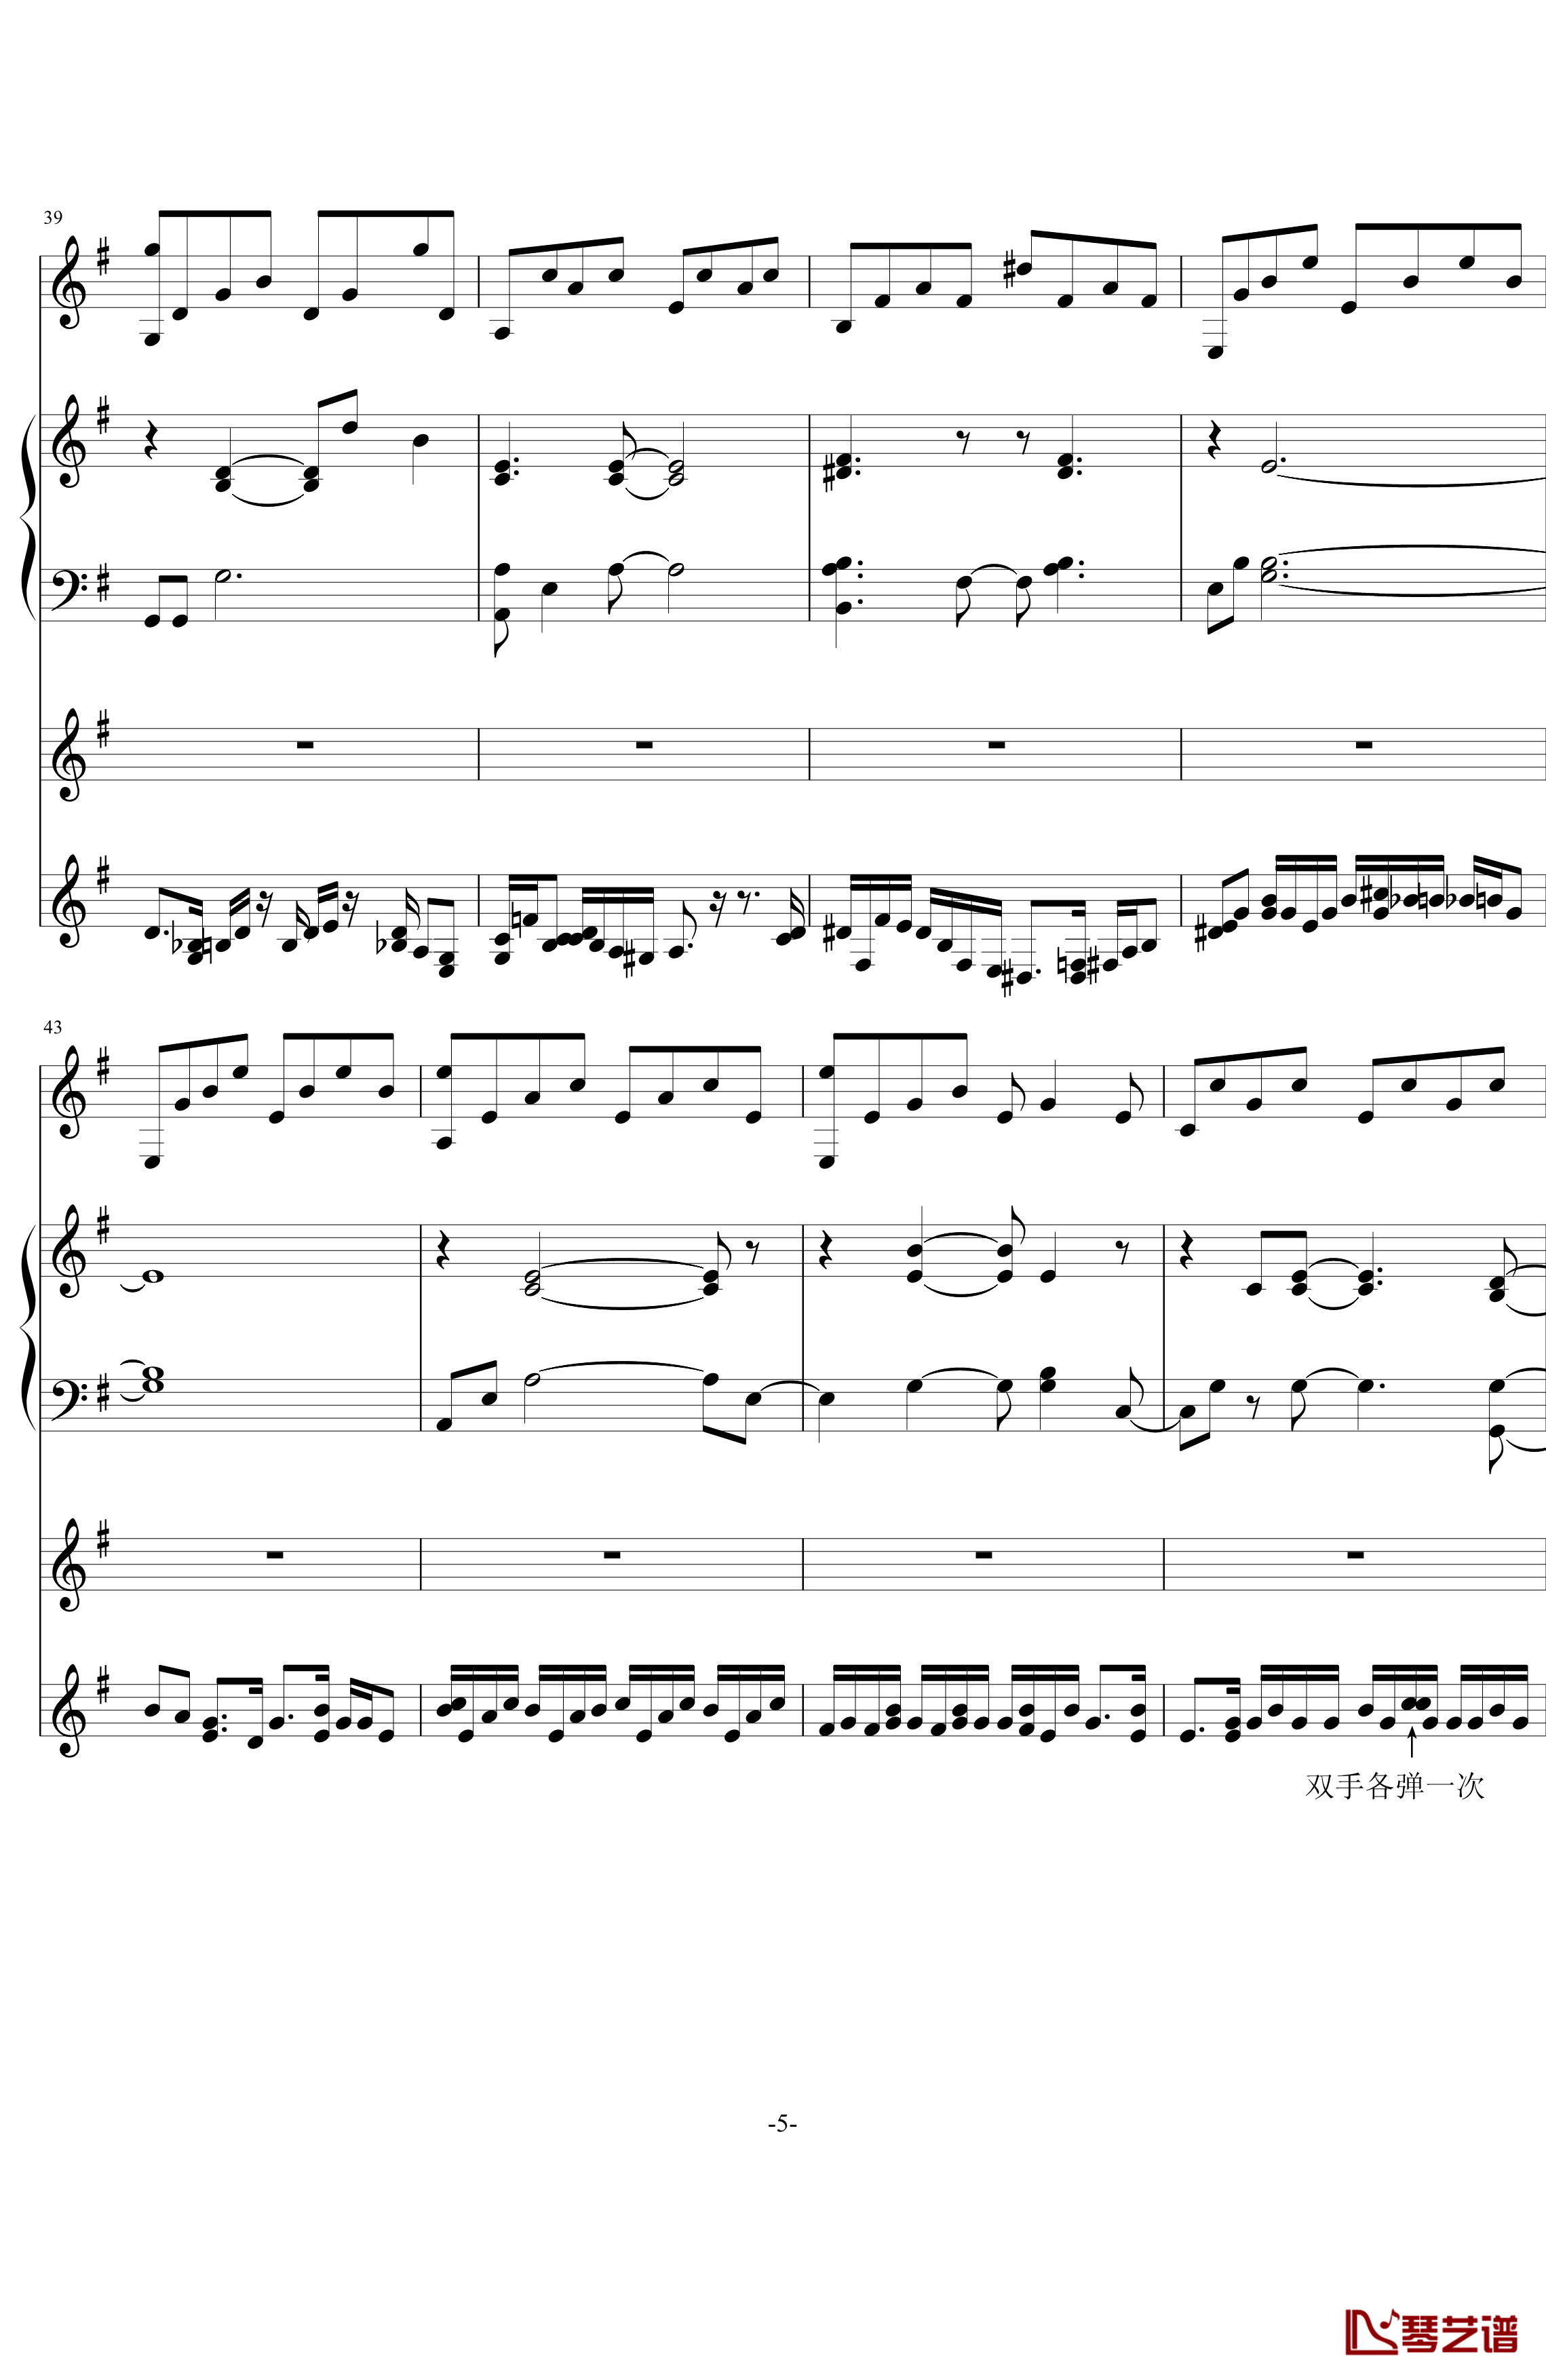 中提琴协奏版钢琴谱-含有钢琴独奏-老奠5